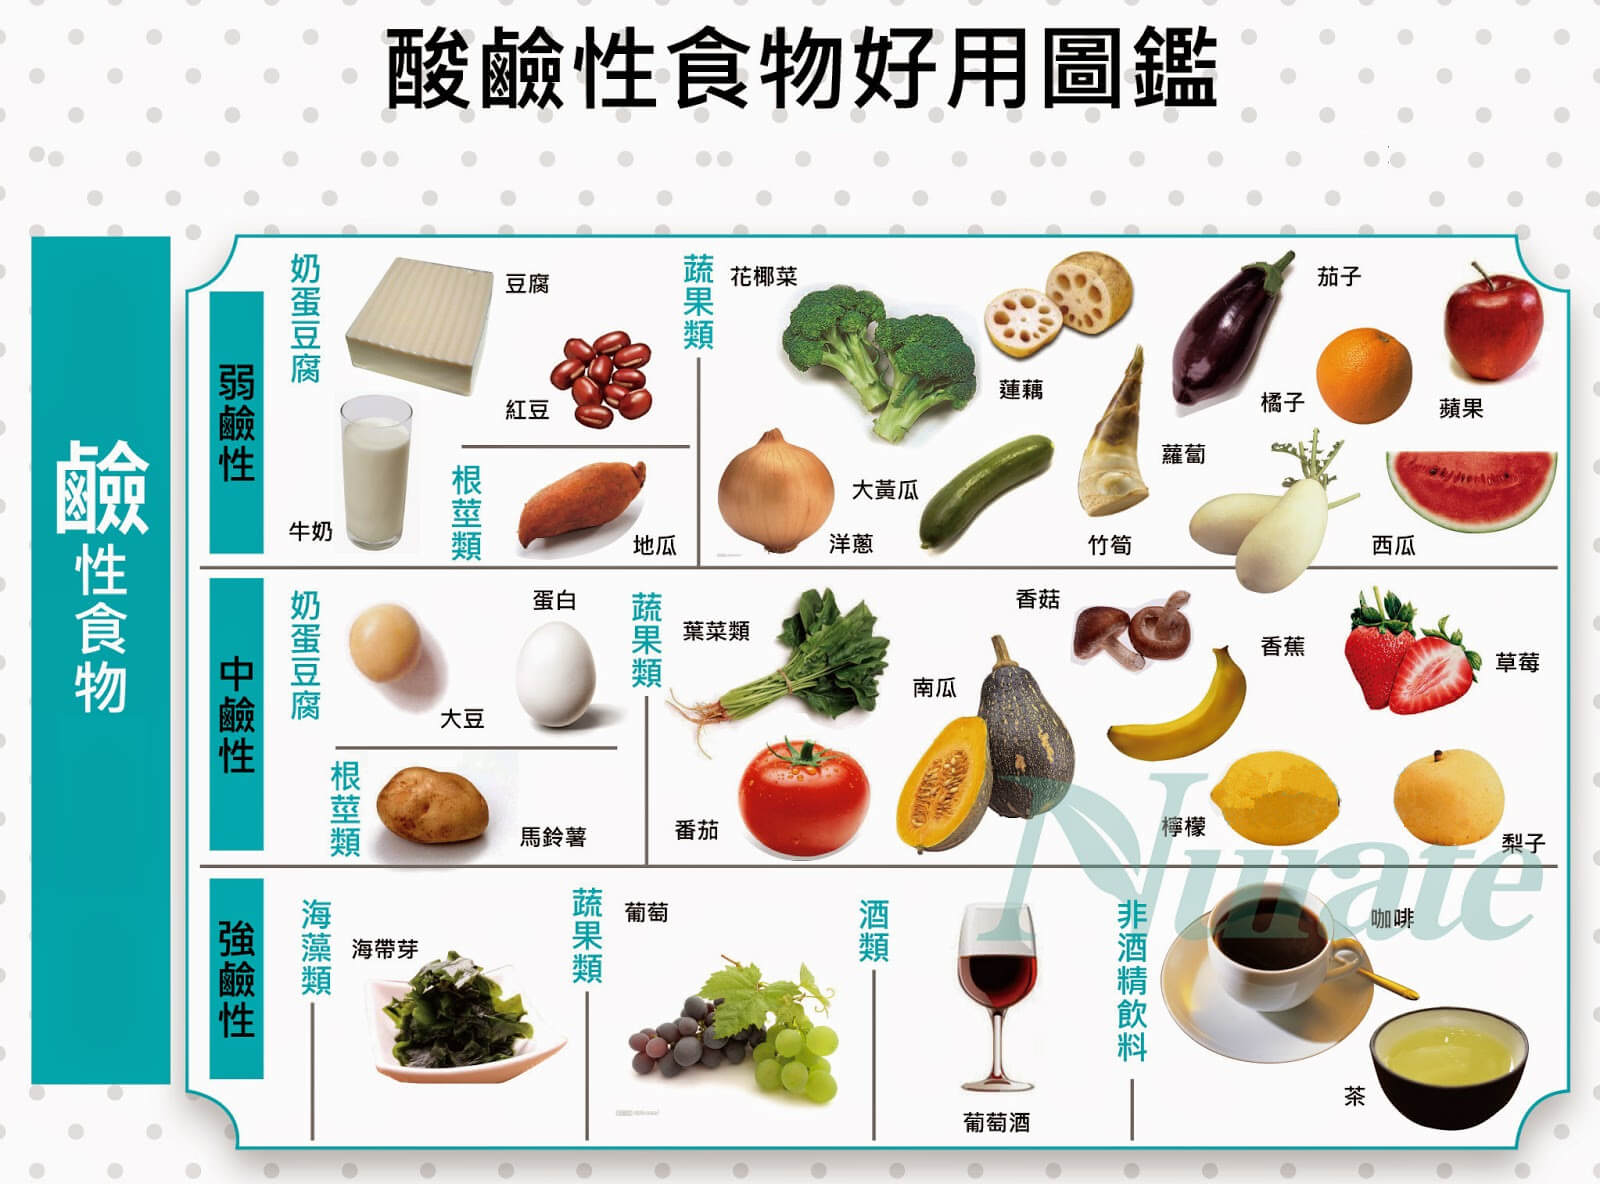 酸性蔬菜表食物图片